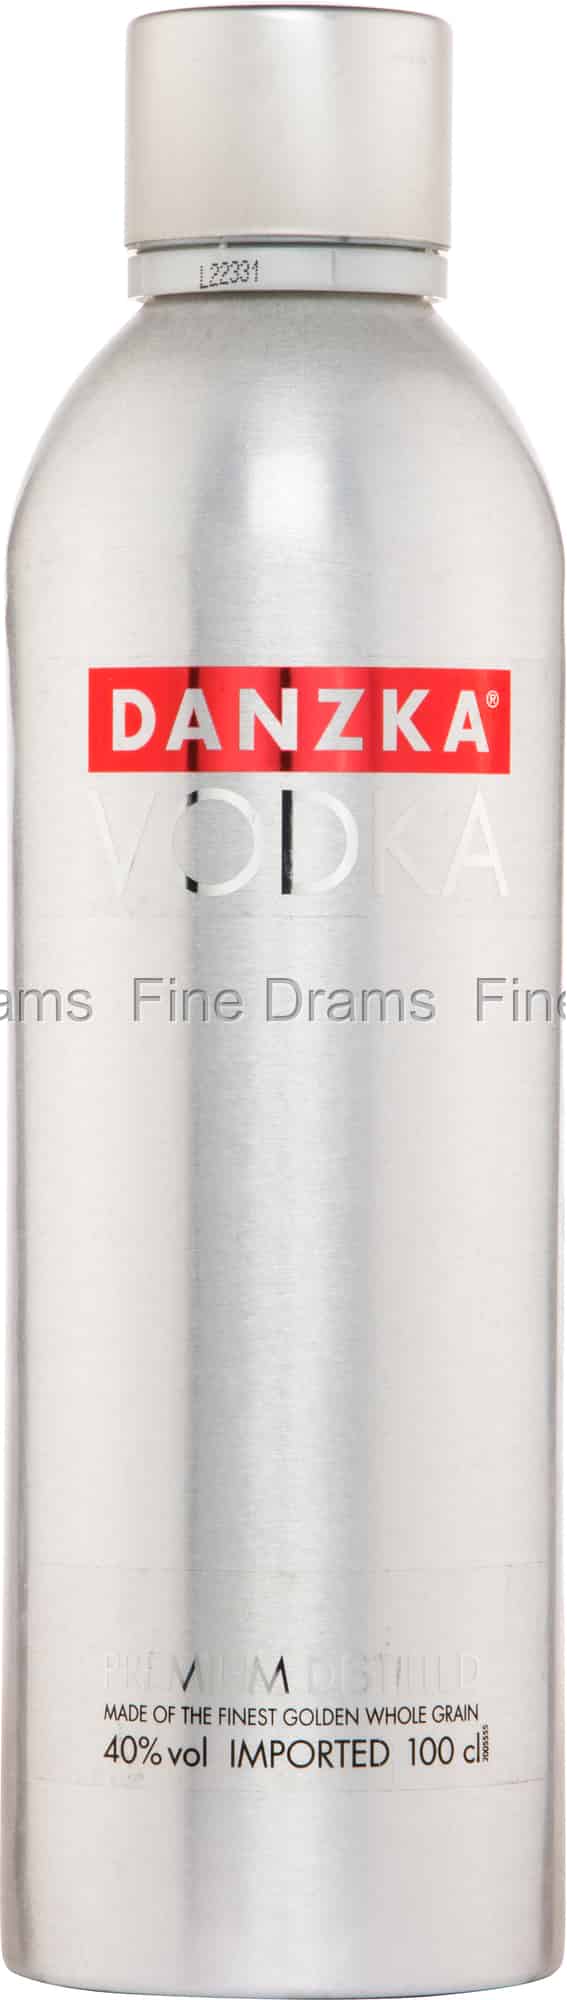 Danzka Vodka Liter) (1